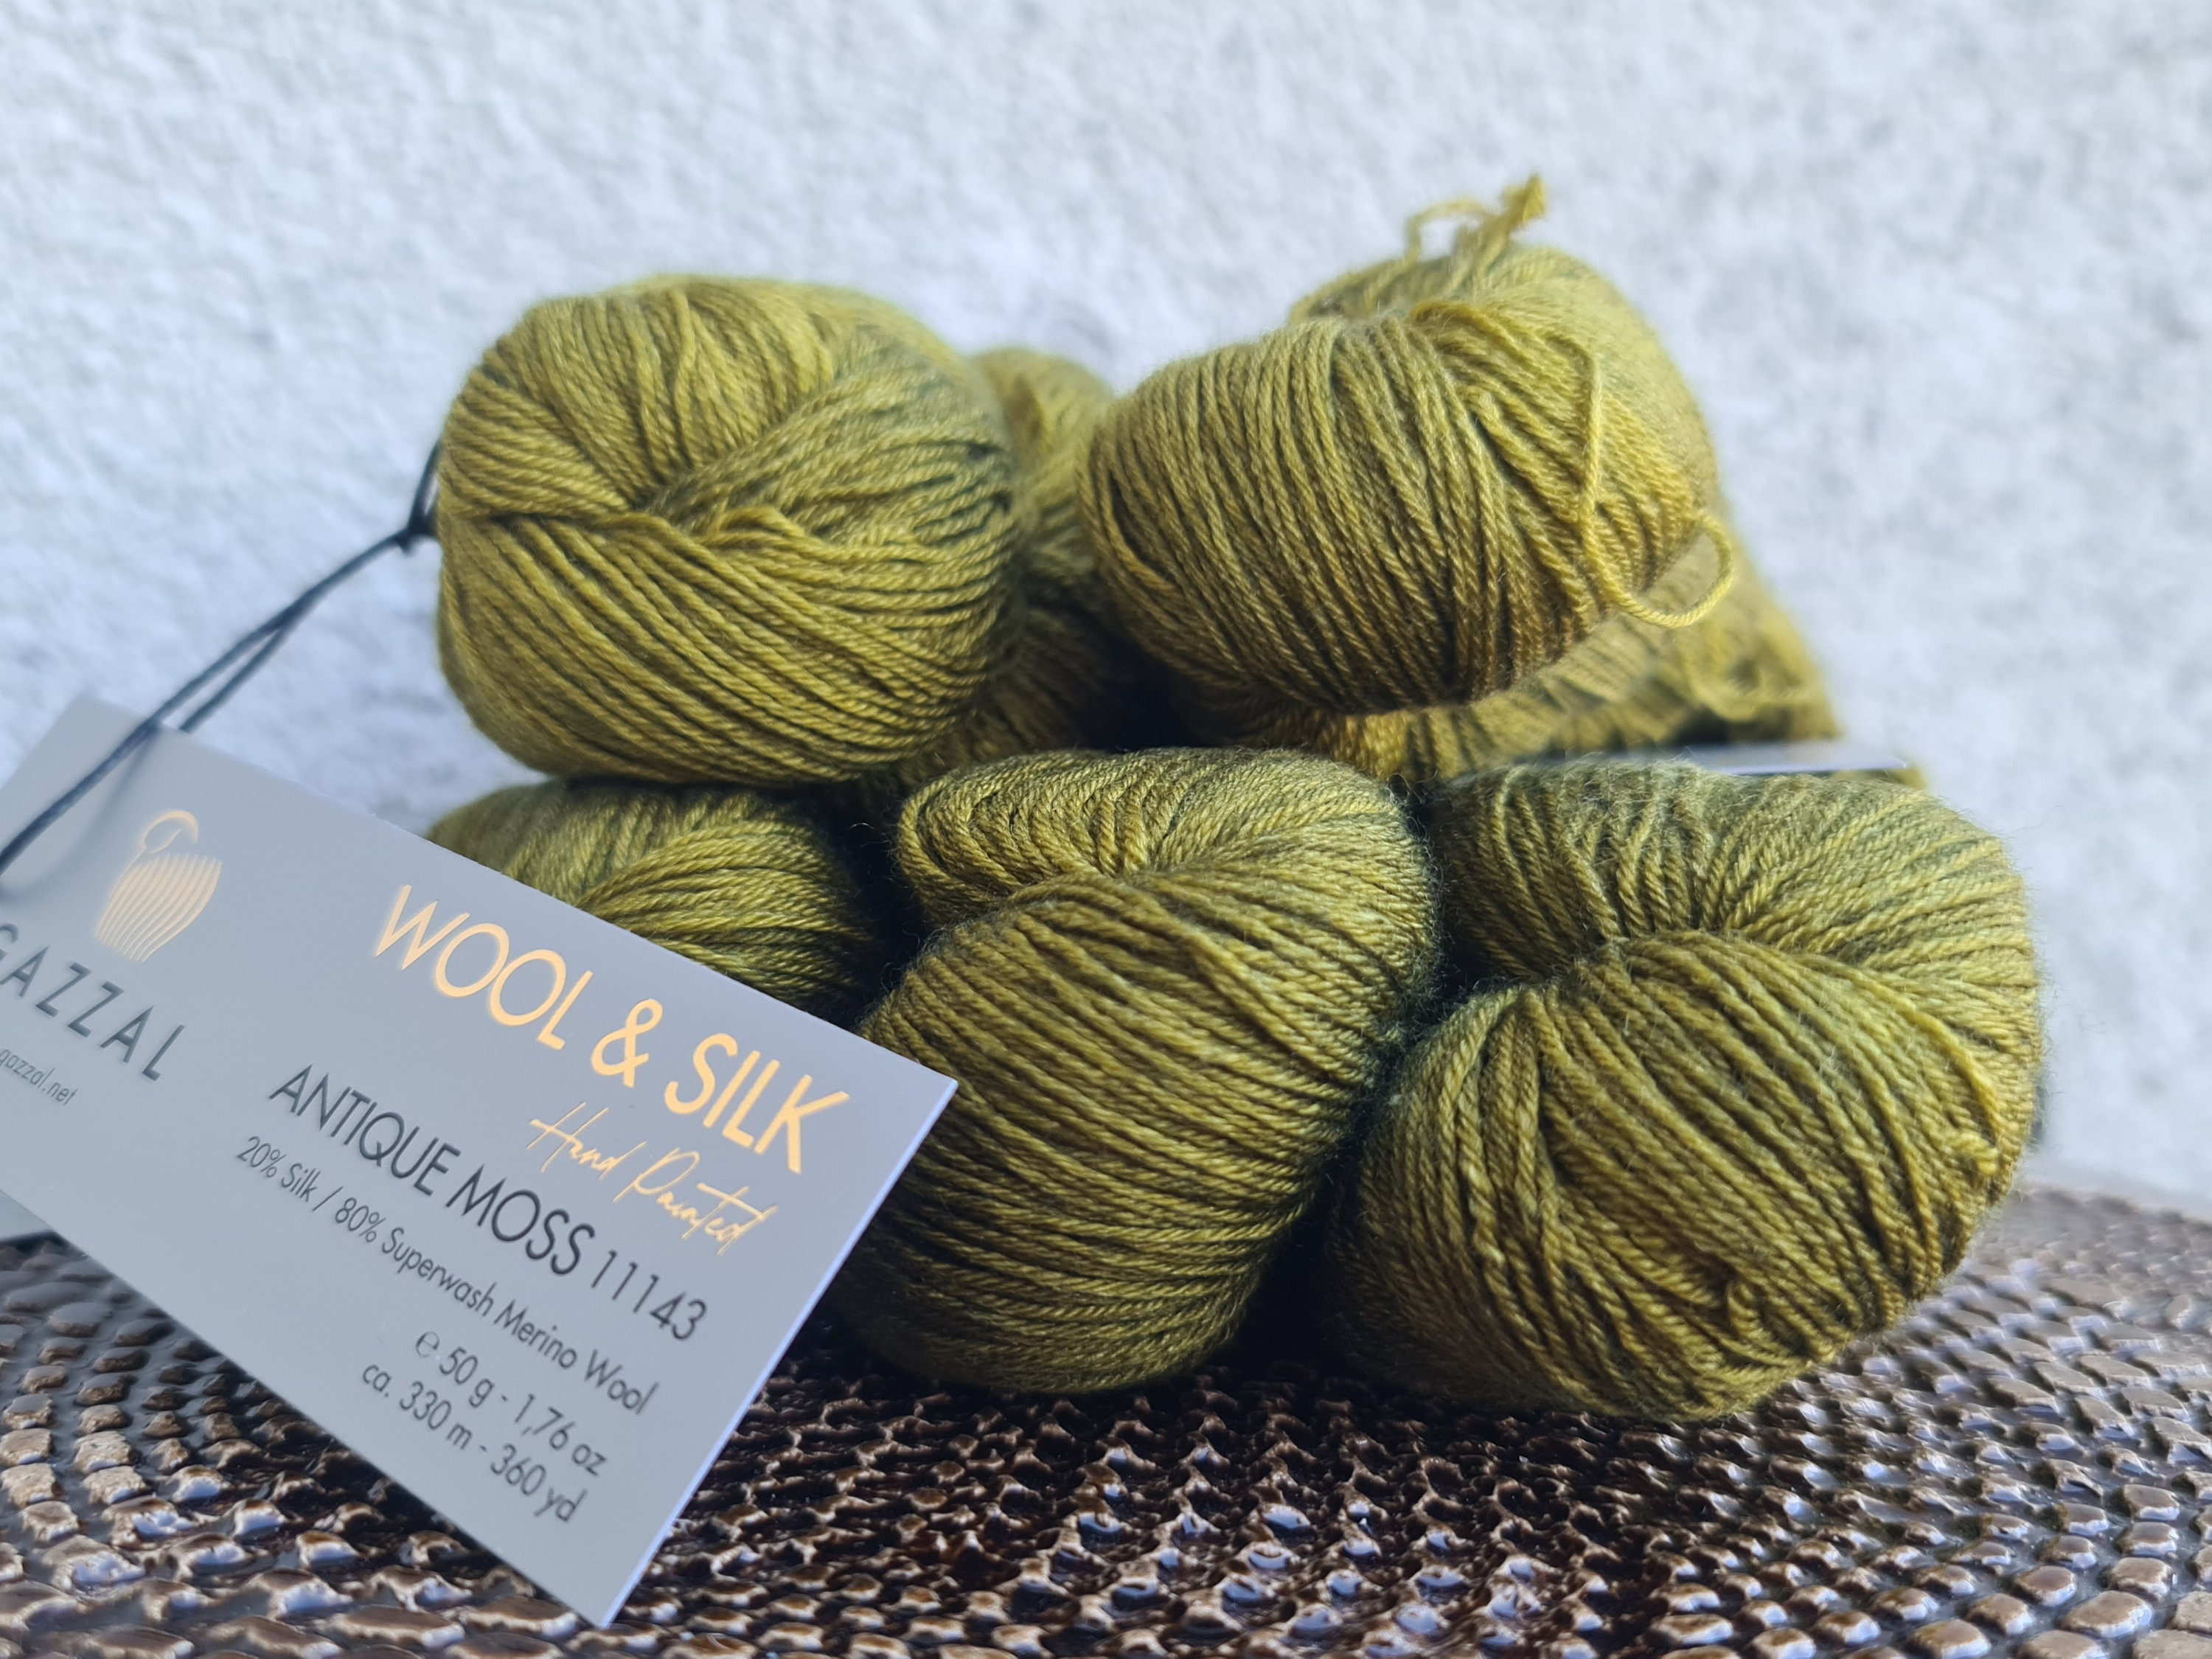 Wool Silk Clothes -  Canada